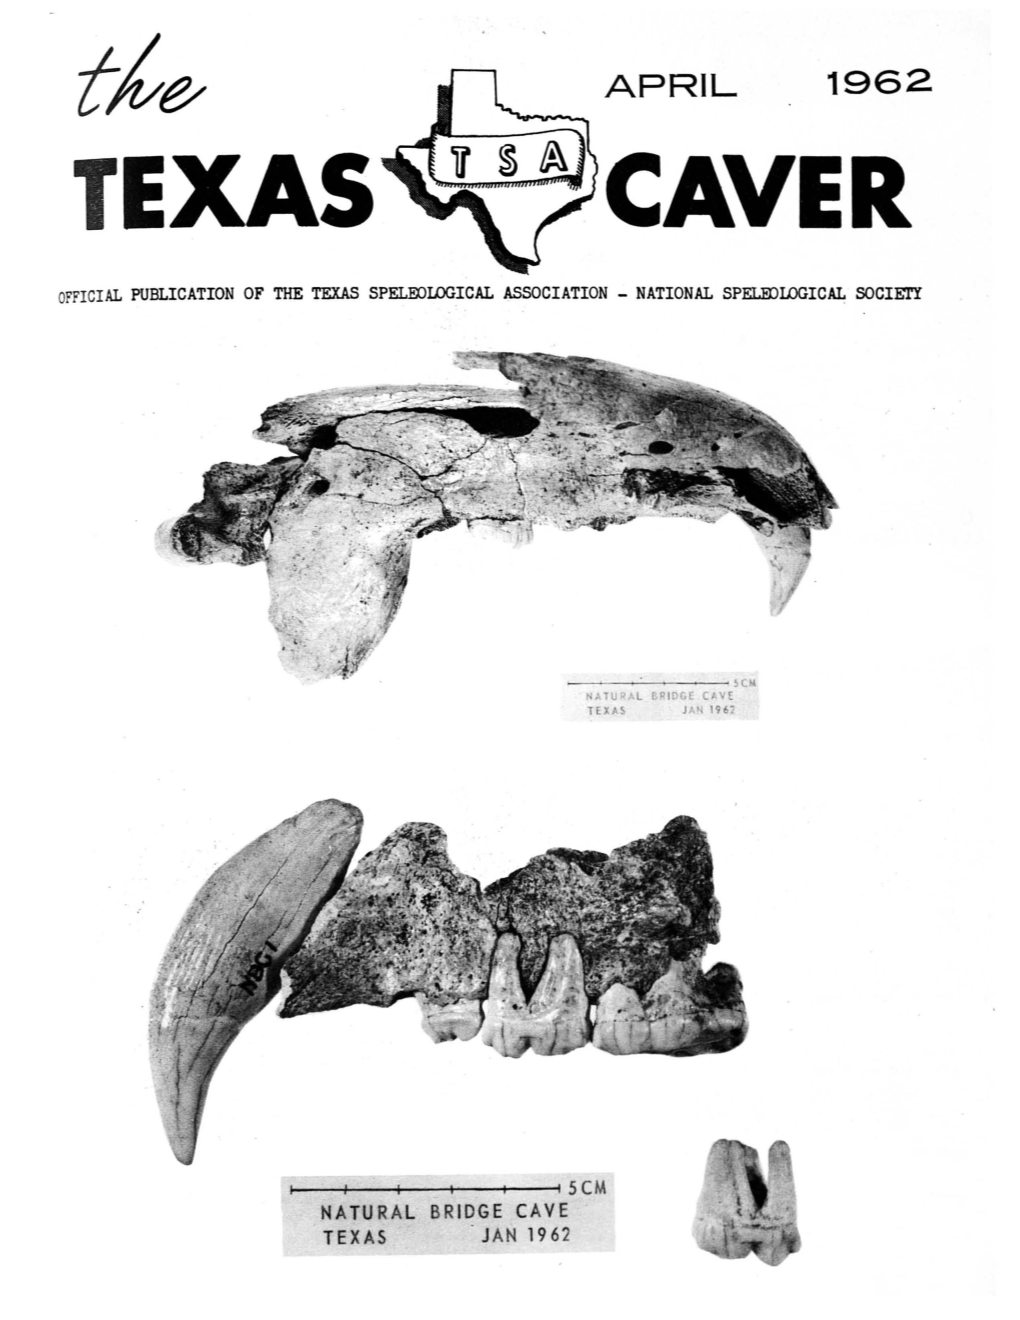 April 1962 Texas Caver